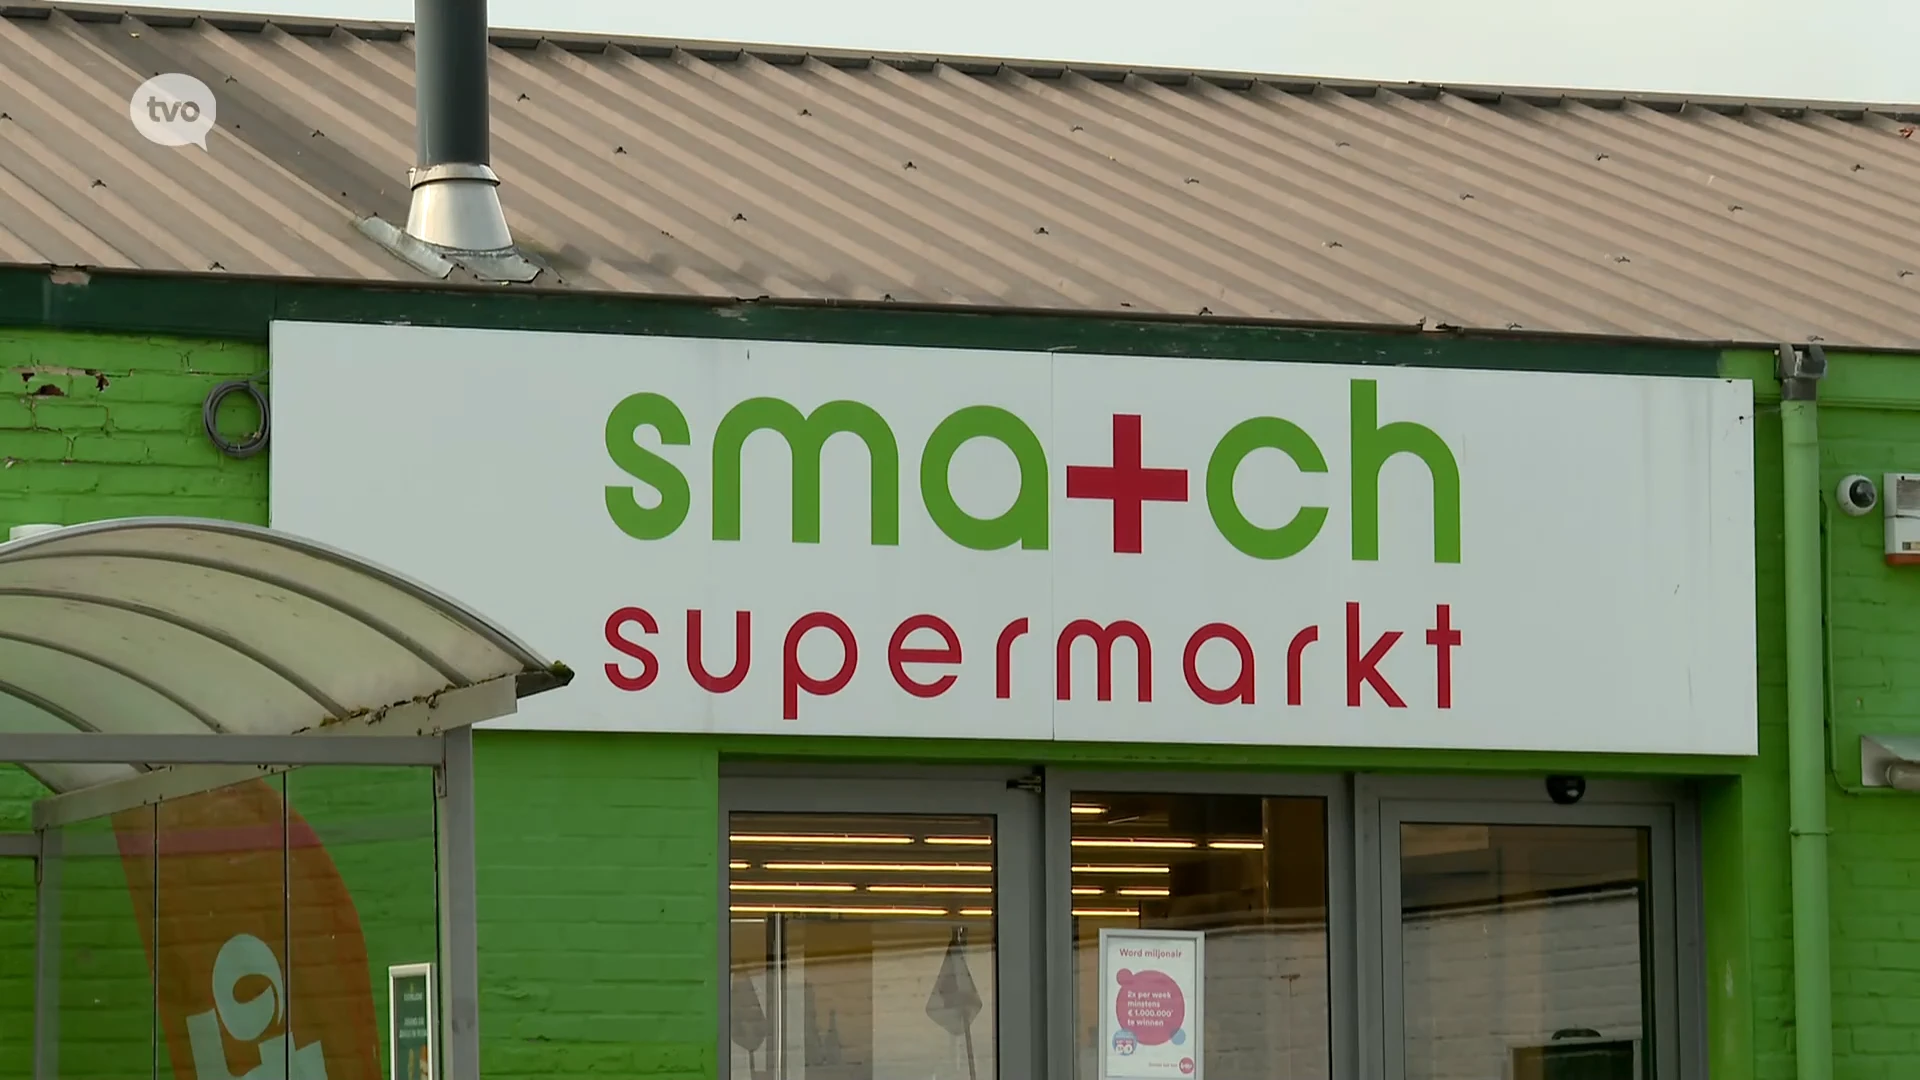 Match & Smatchwinkels in Haaltert, Kalken en Waasmunster moeten sluiten